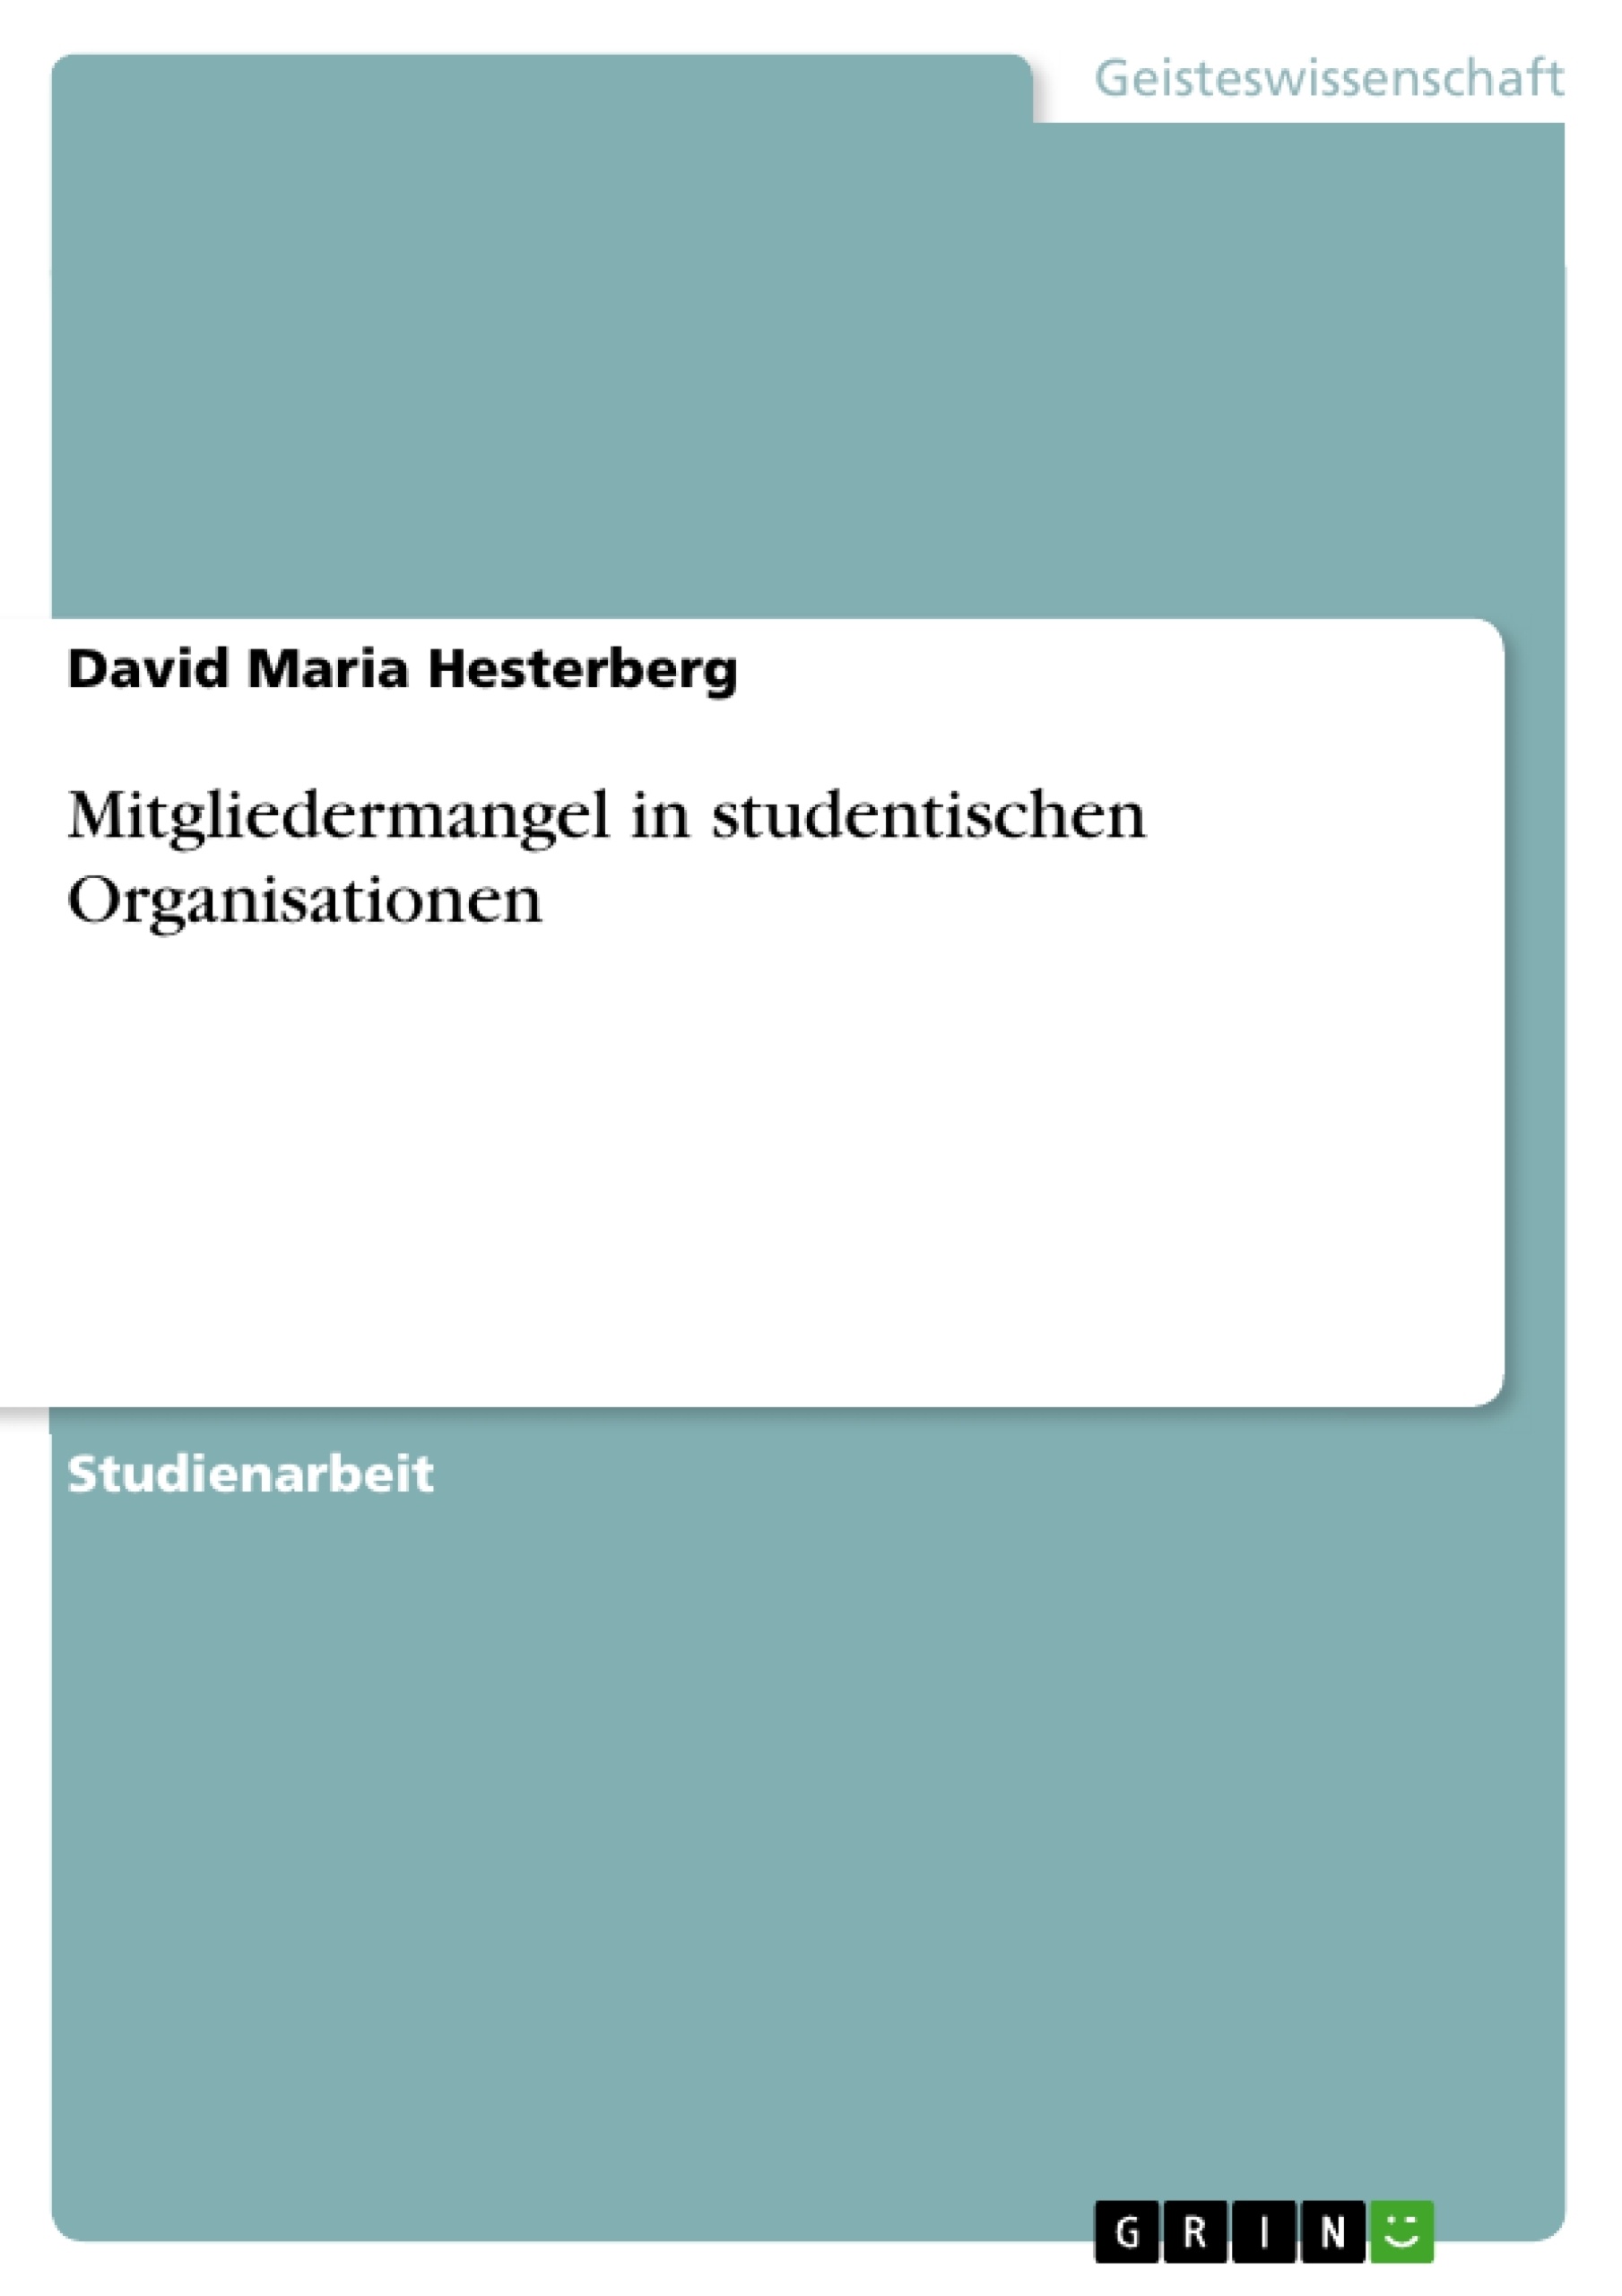 Título: Mitgliedermangel in studentischen Organisationen